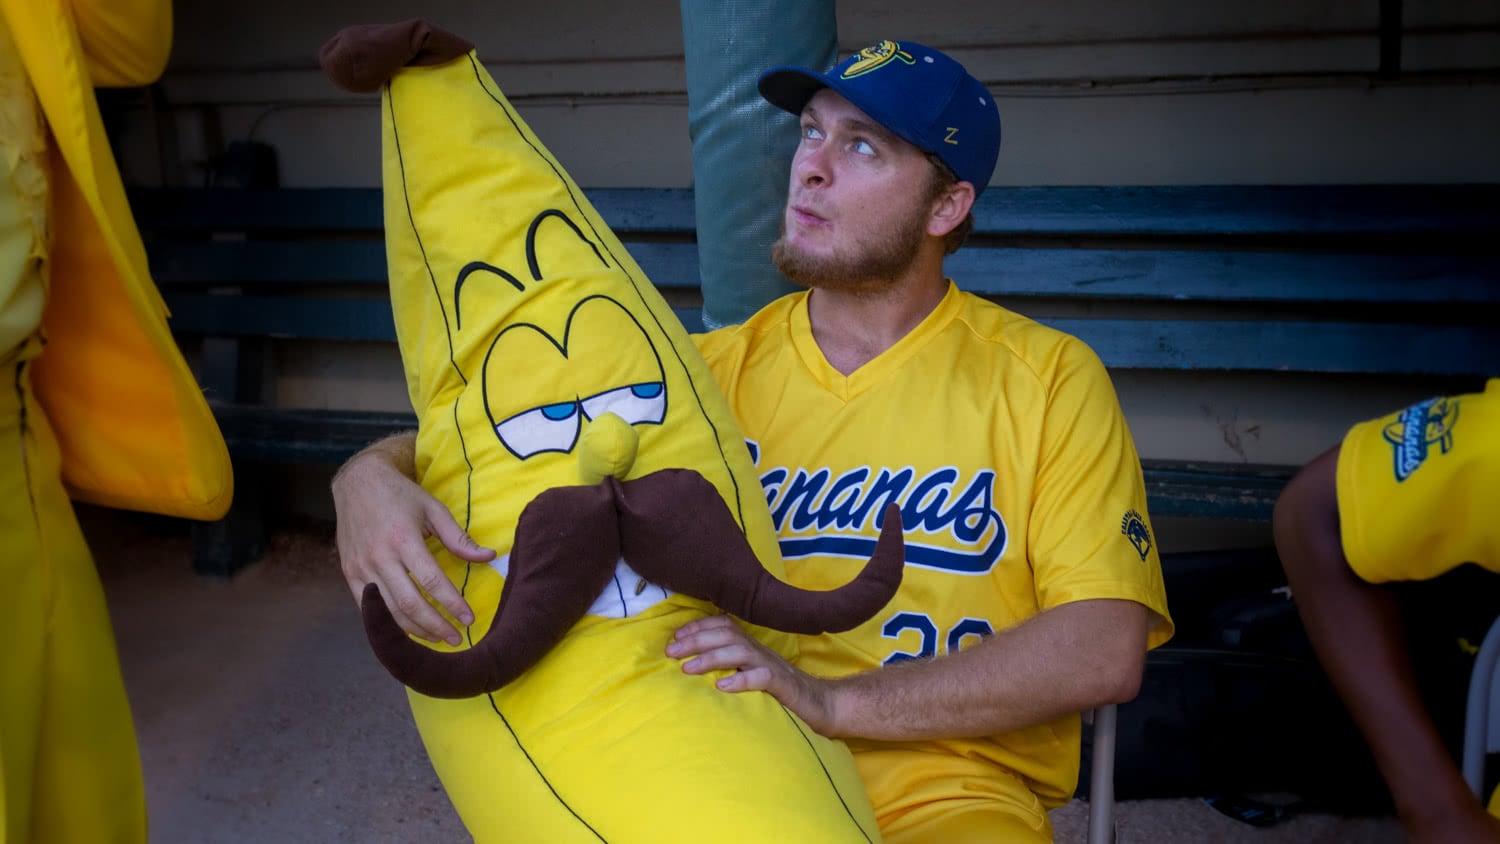 Stuffed Banana with Handlebar Mustache Checks Out Baseball Player